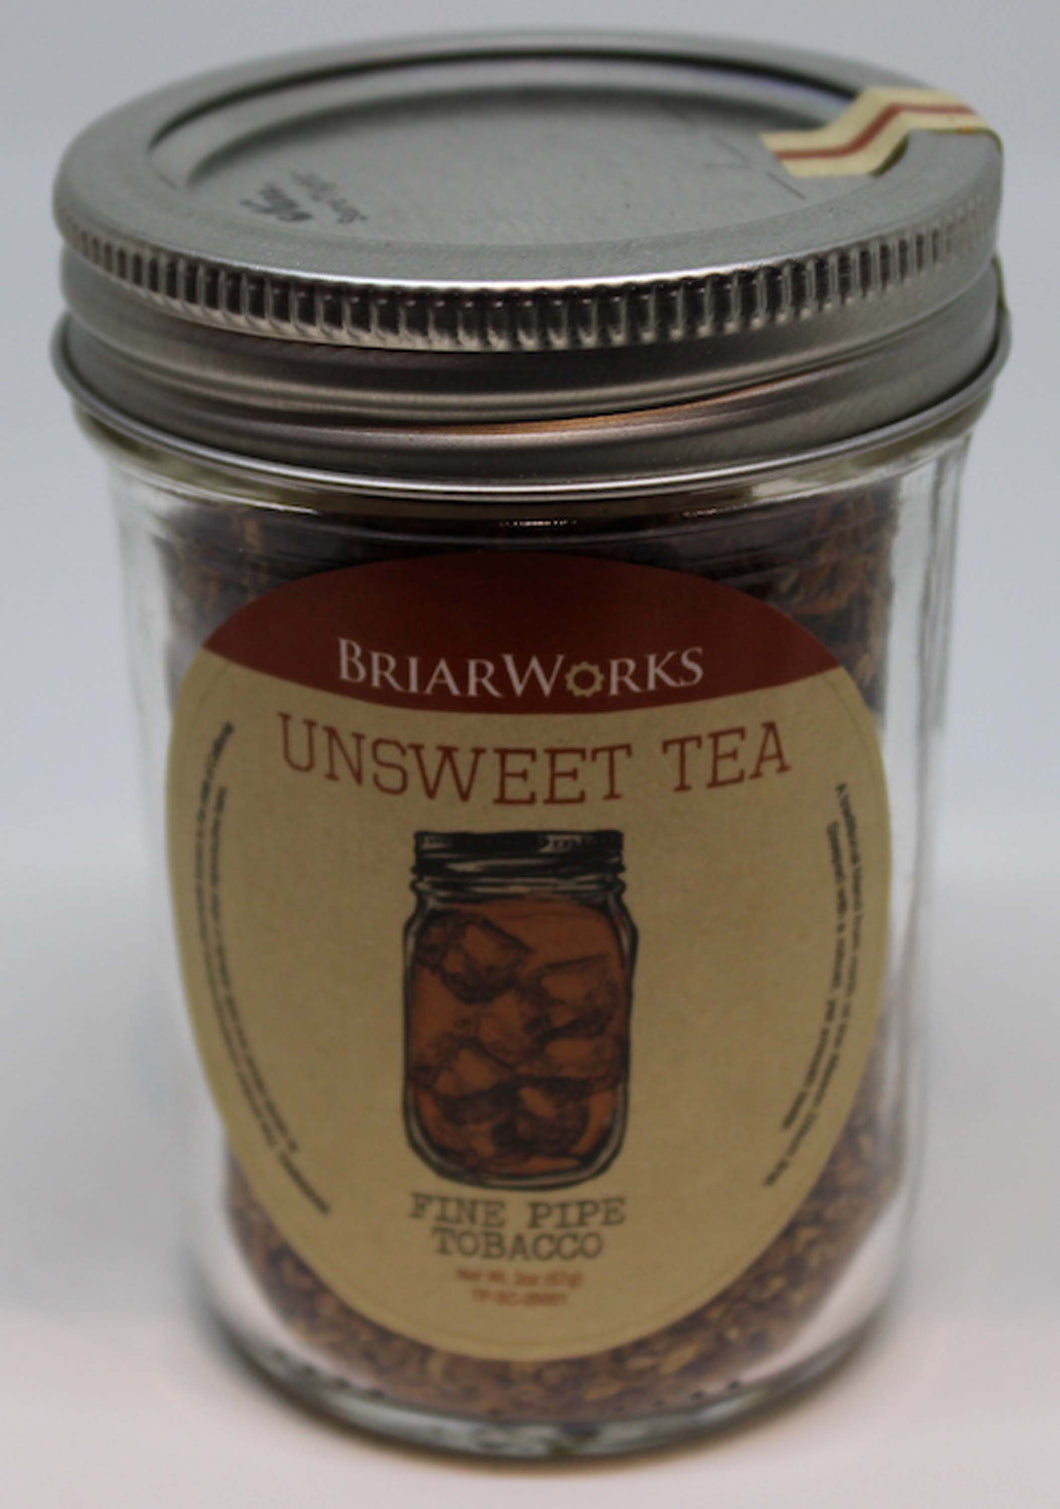 Briarworks Unsweet Tea 2 oz Tin